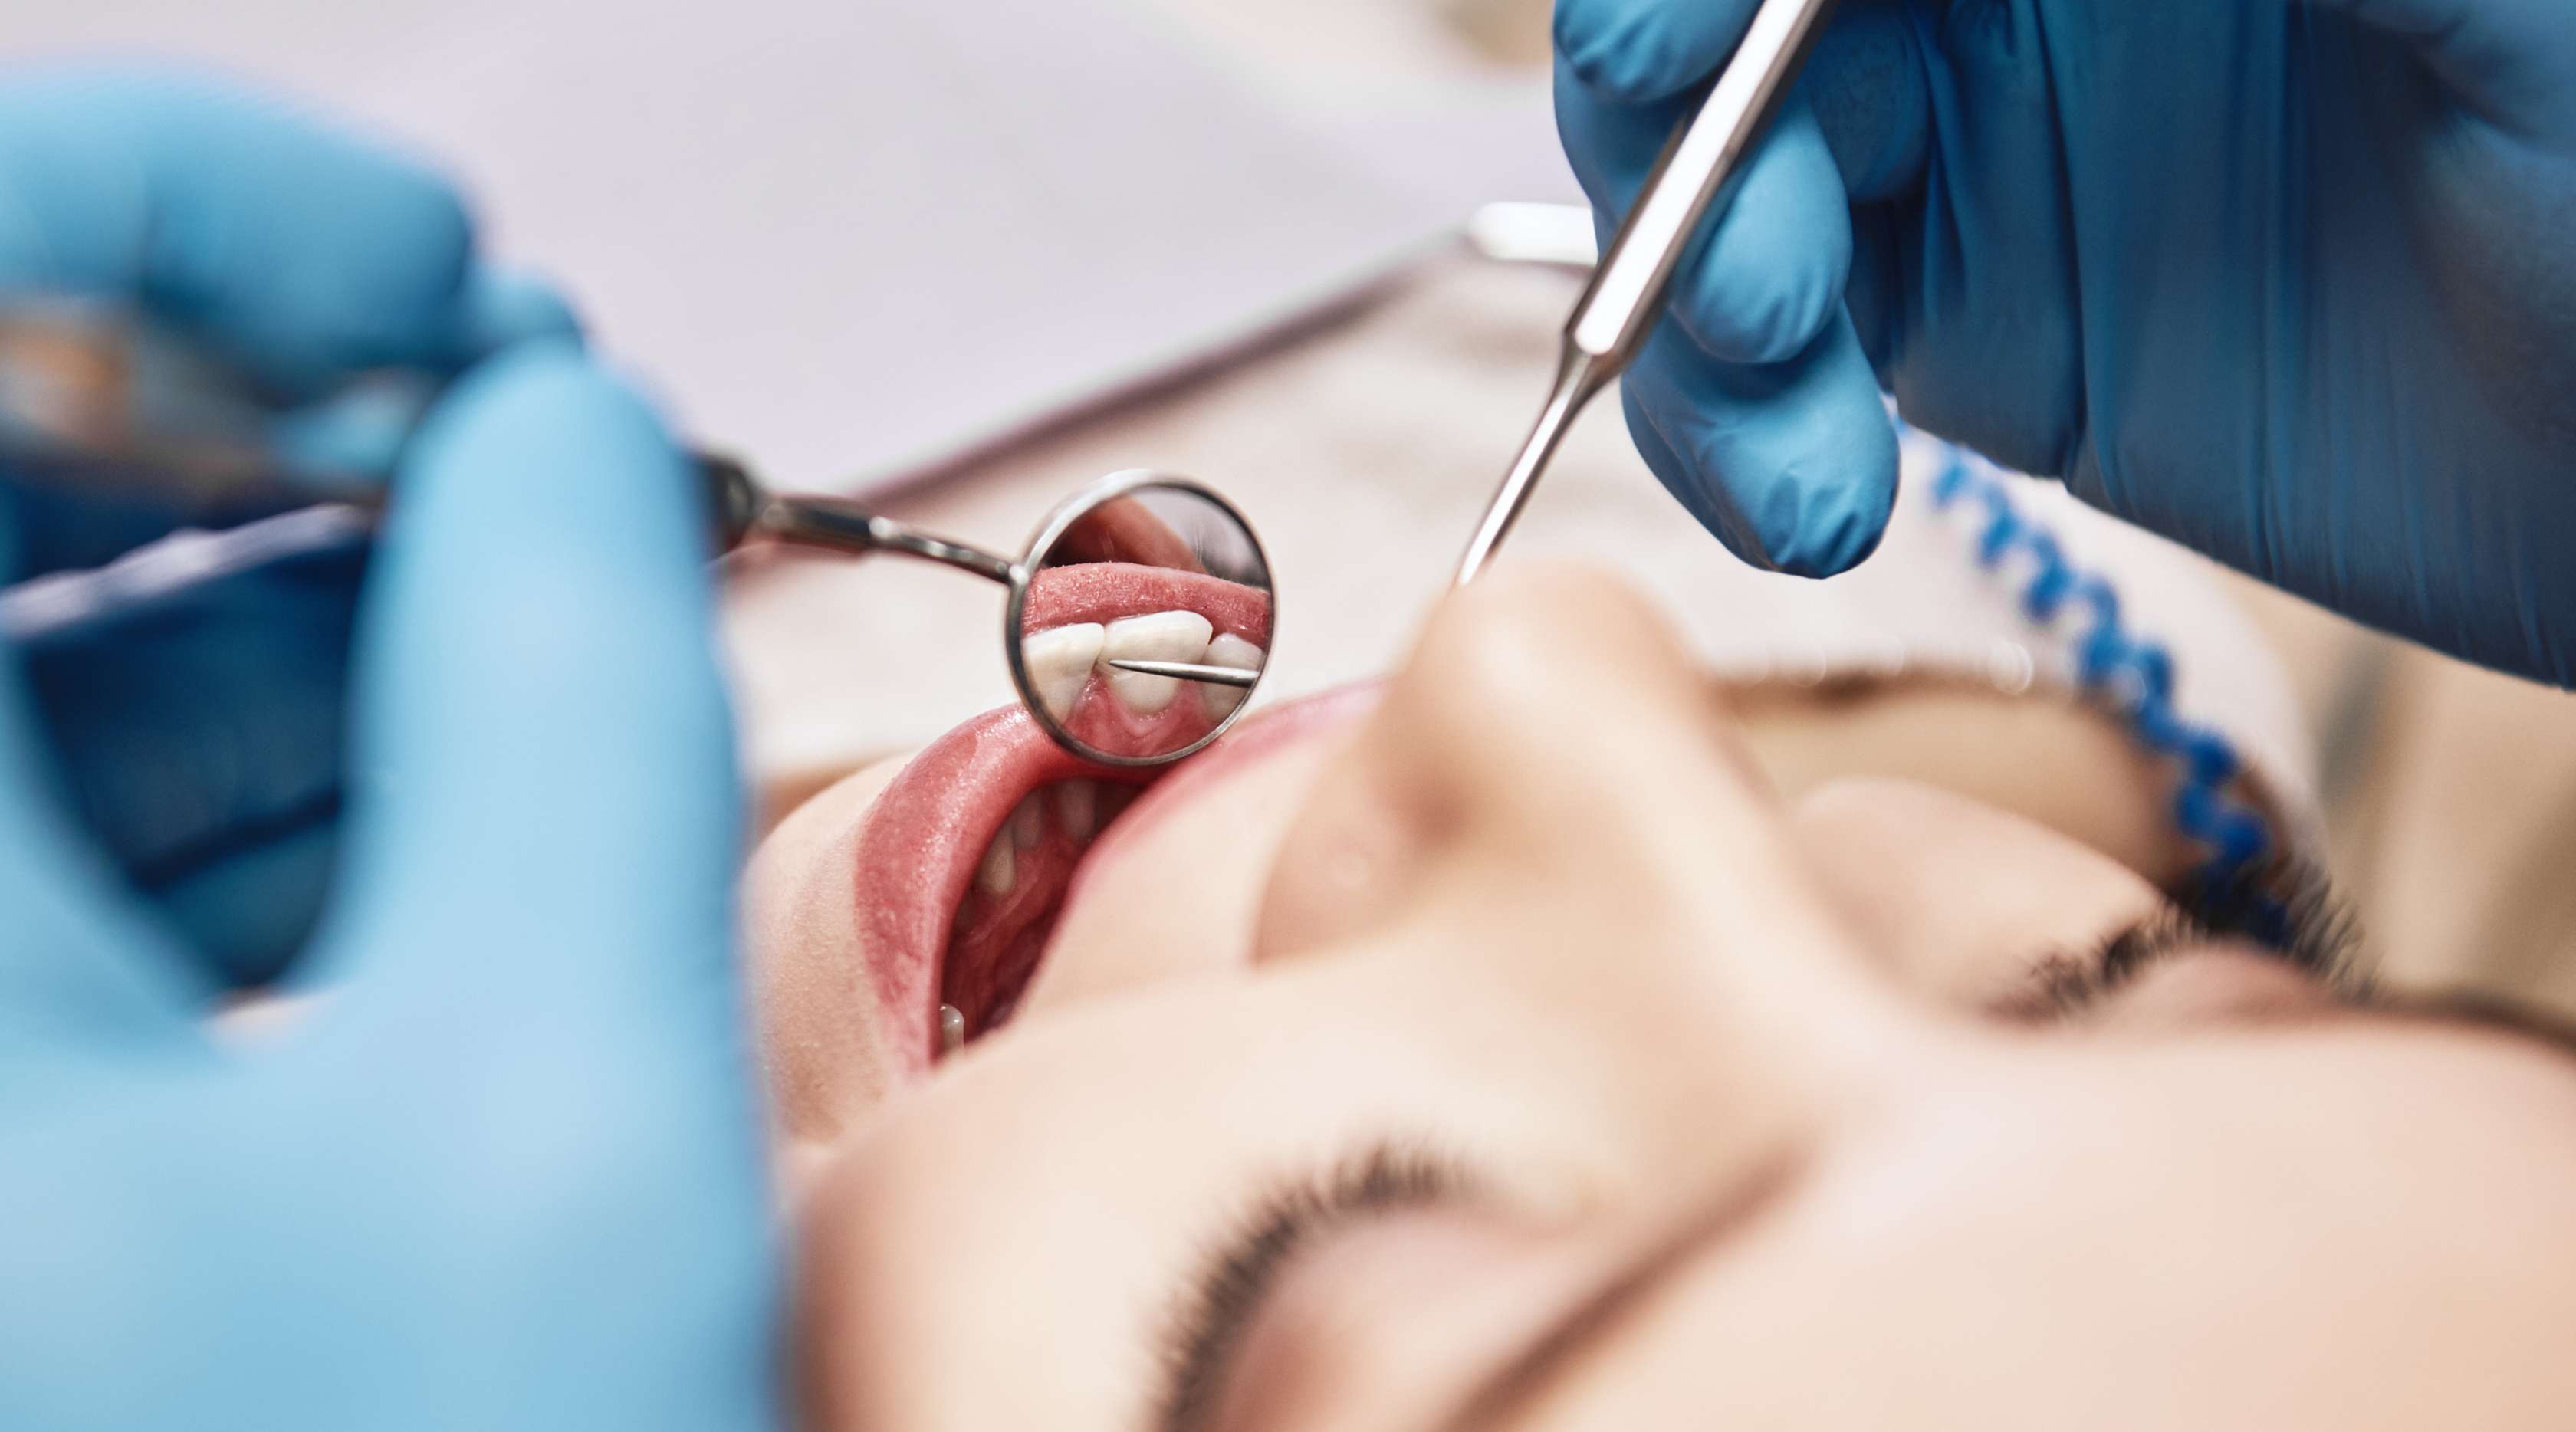 Junge lächelnde Frau auf Behandlungsstuhl, während Zahnarzt mit blauen Handschuhen Zahnbesteck vor ihren Mund hält.